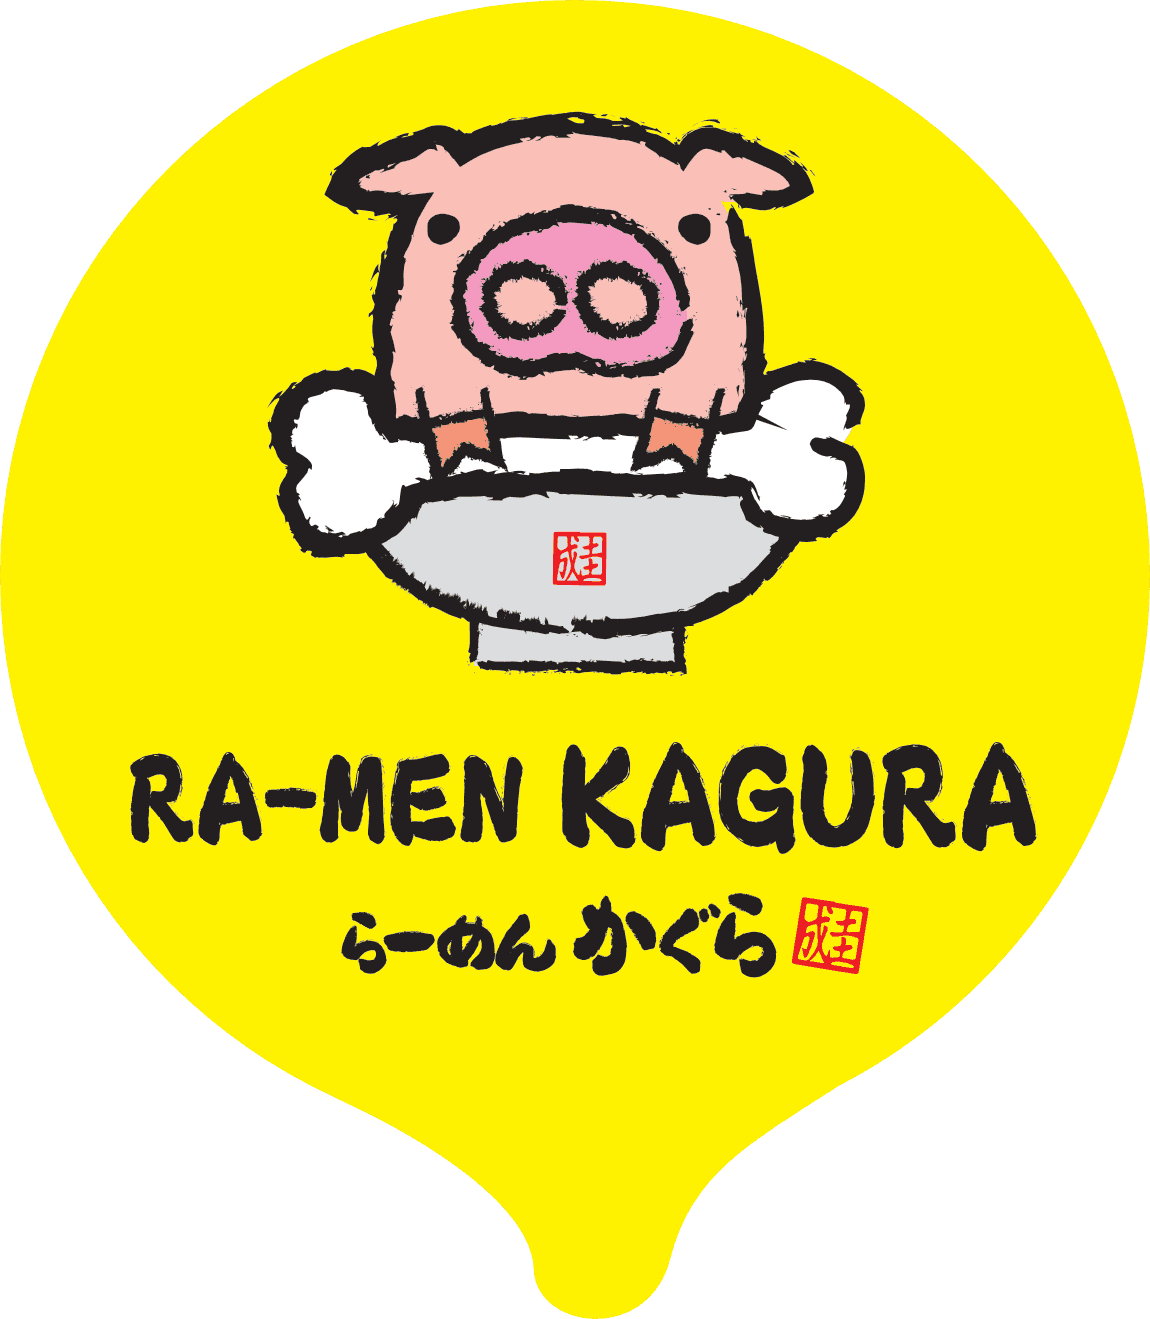 Ramen Kagura